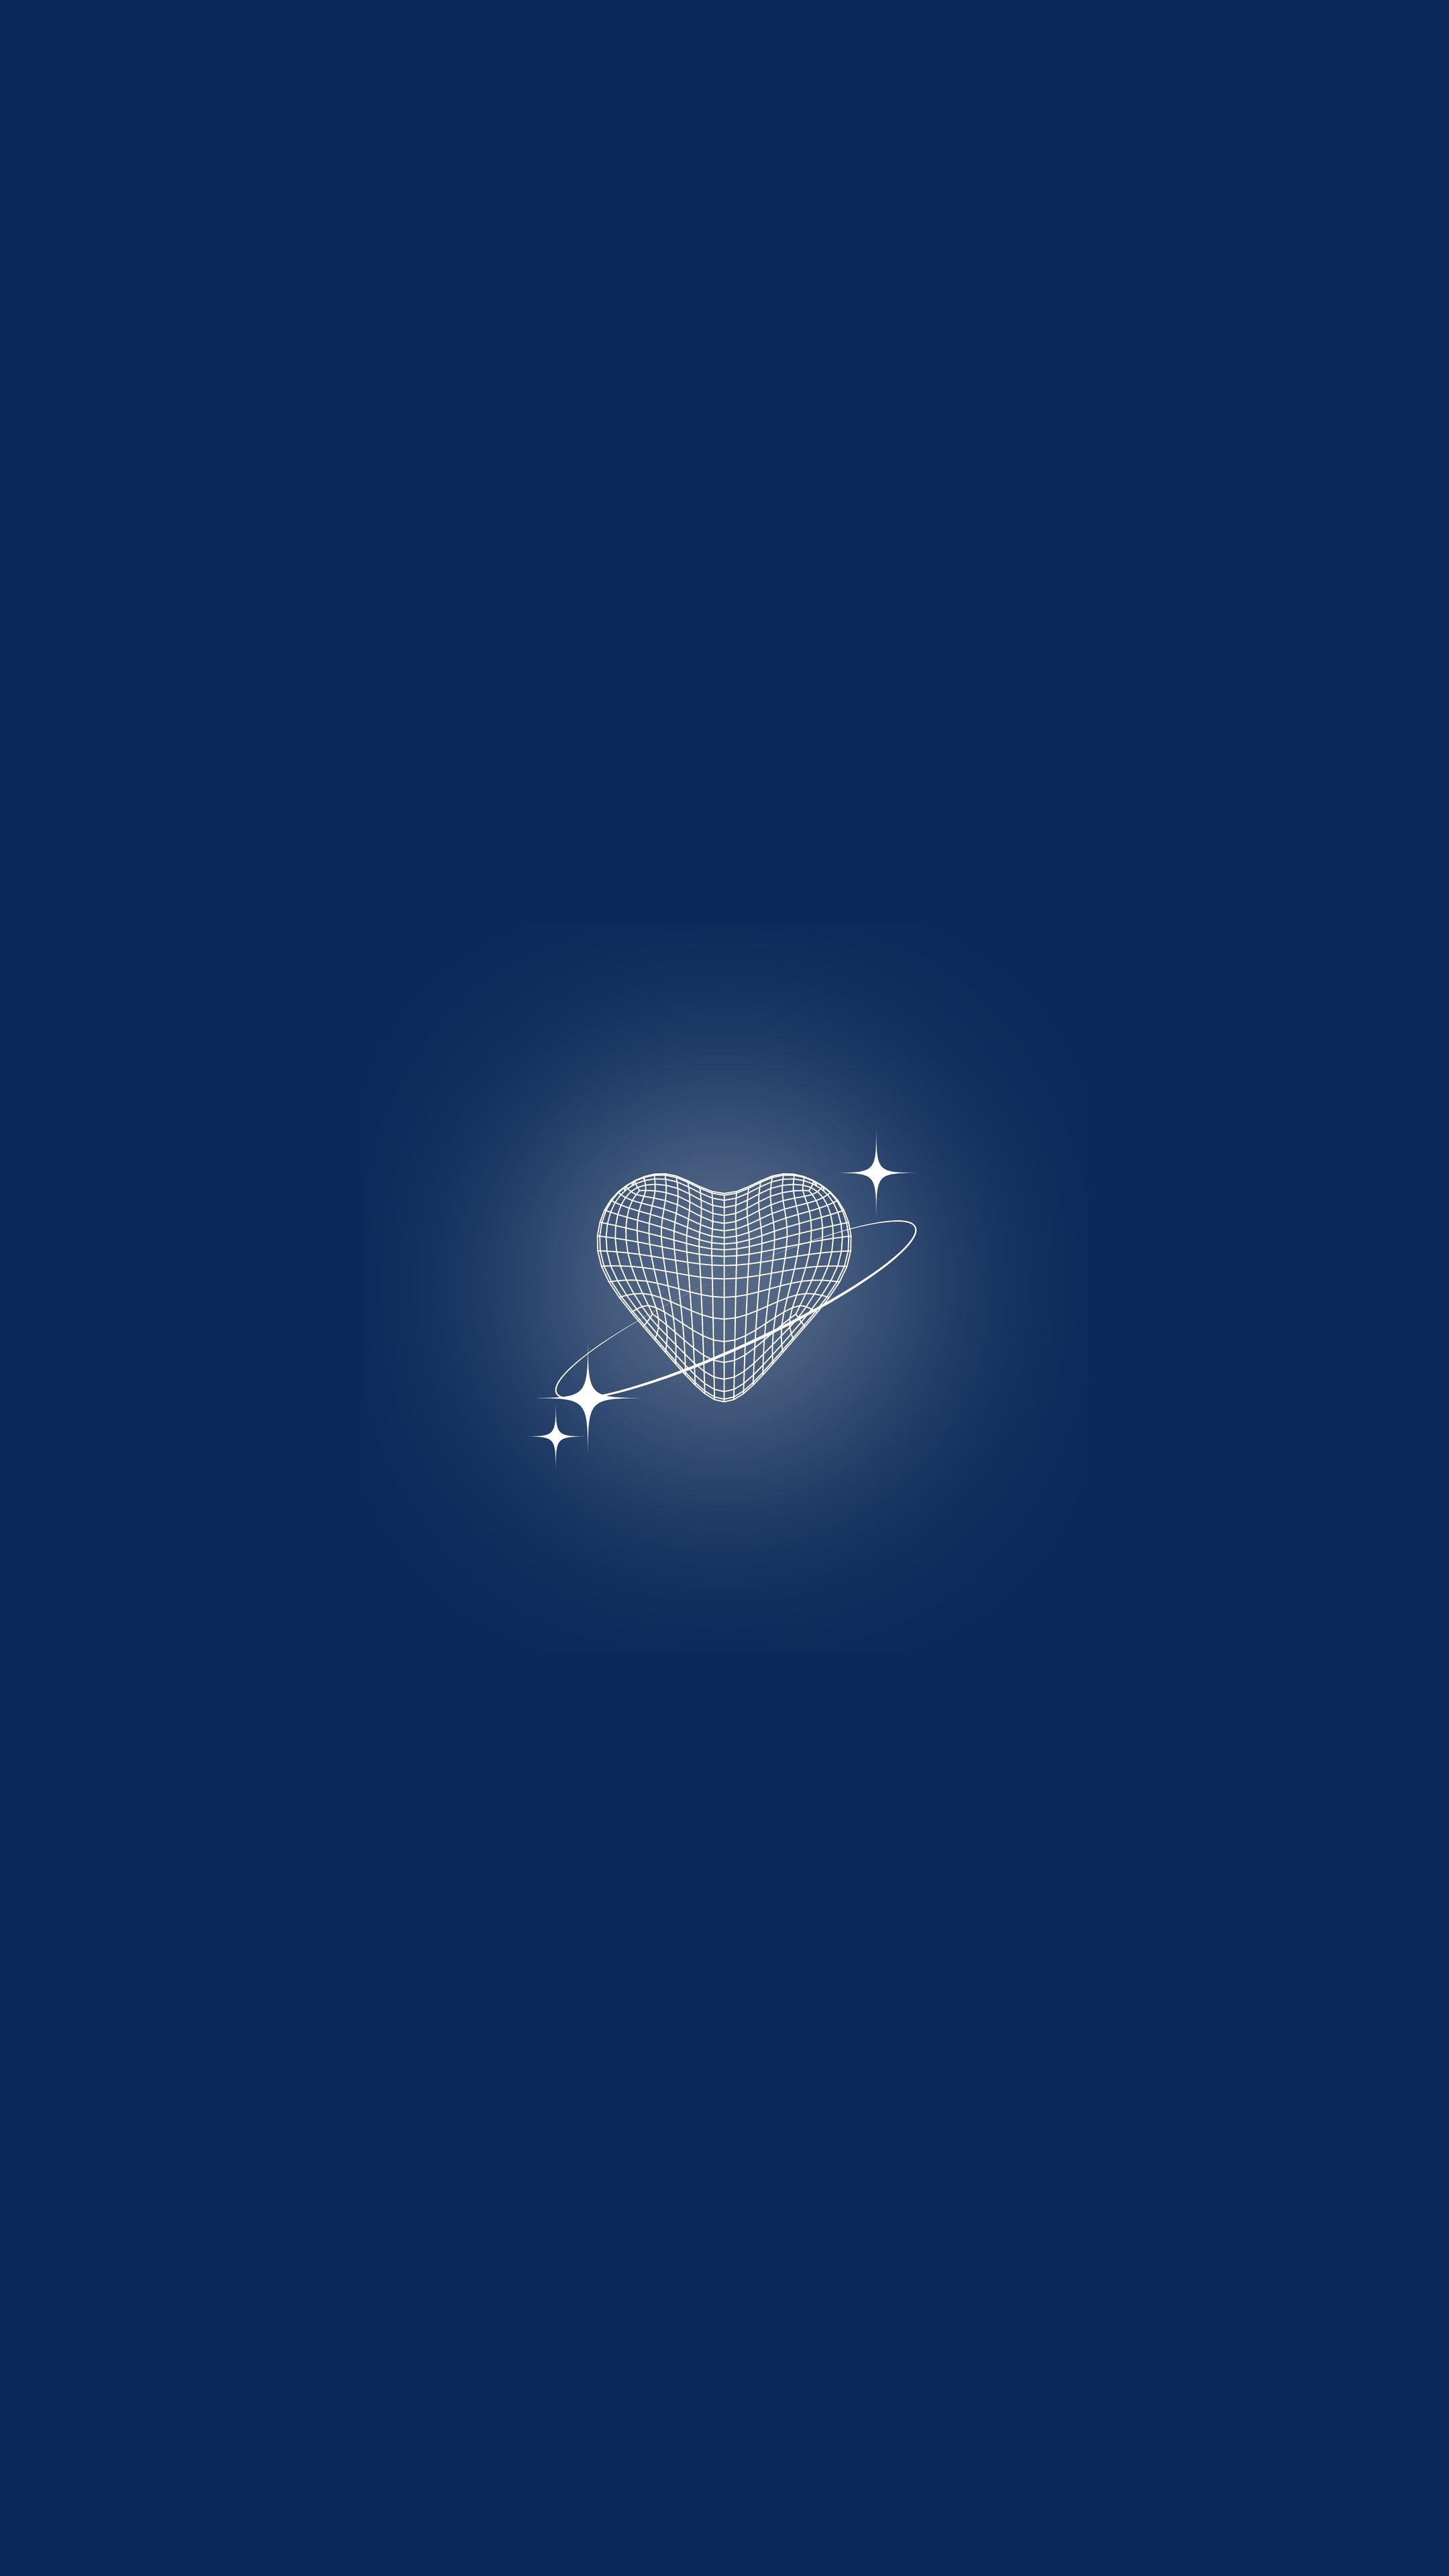 Shining Heart on Dark Blue Background Hình nền[c656dc8c75984ca4b8d4]